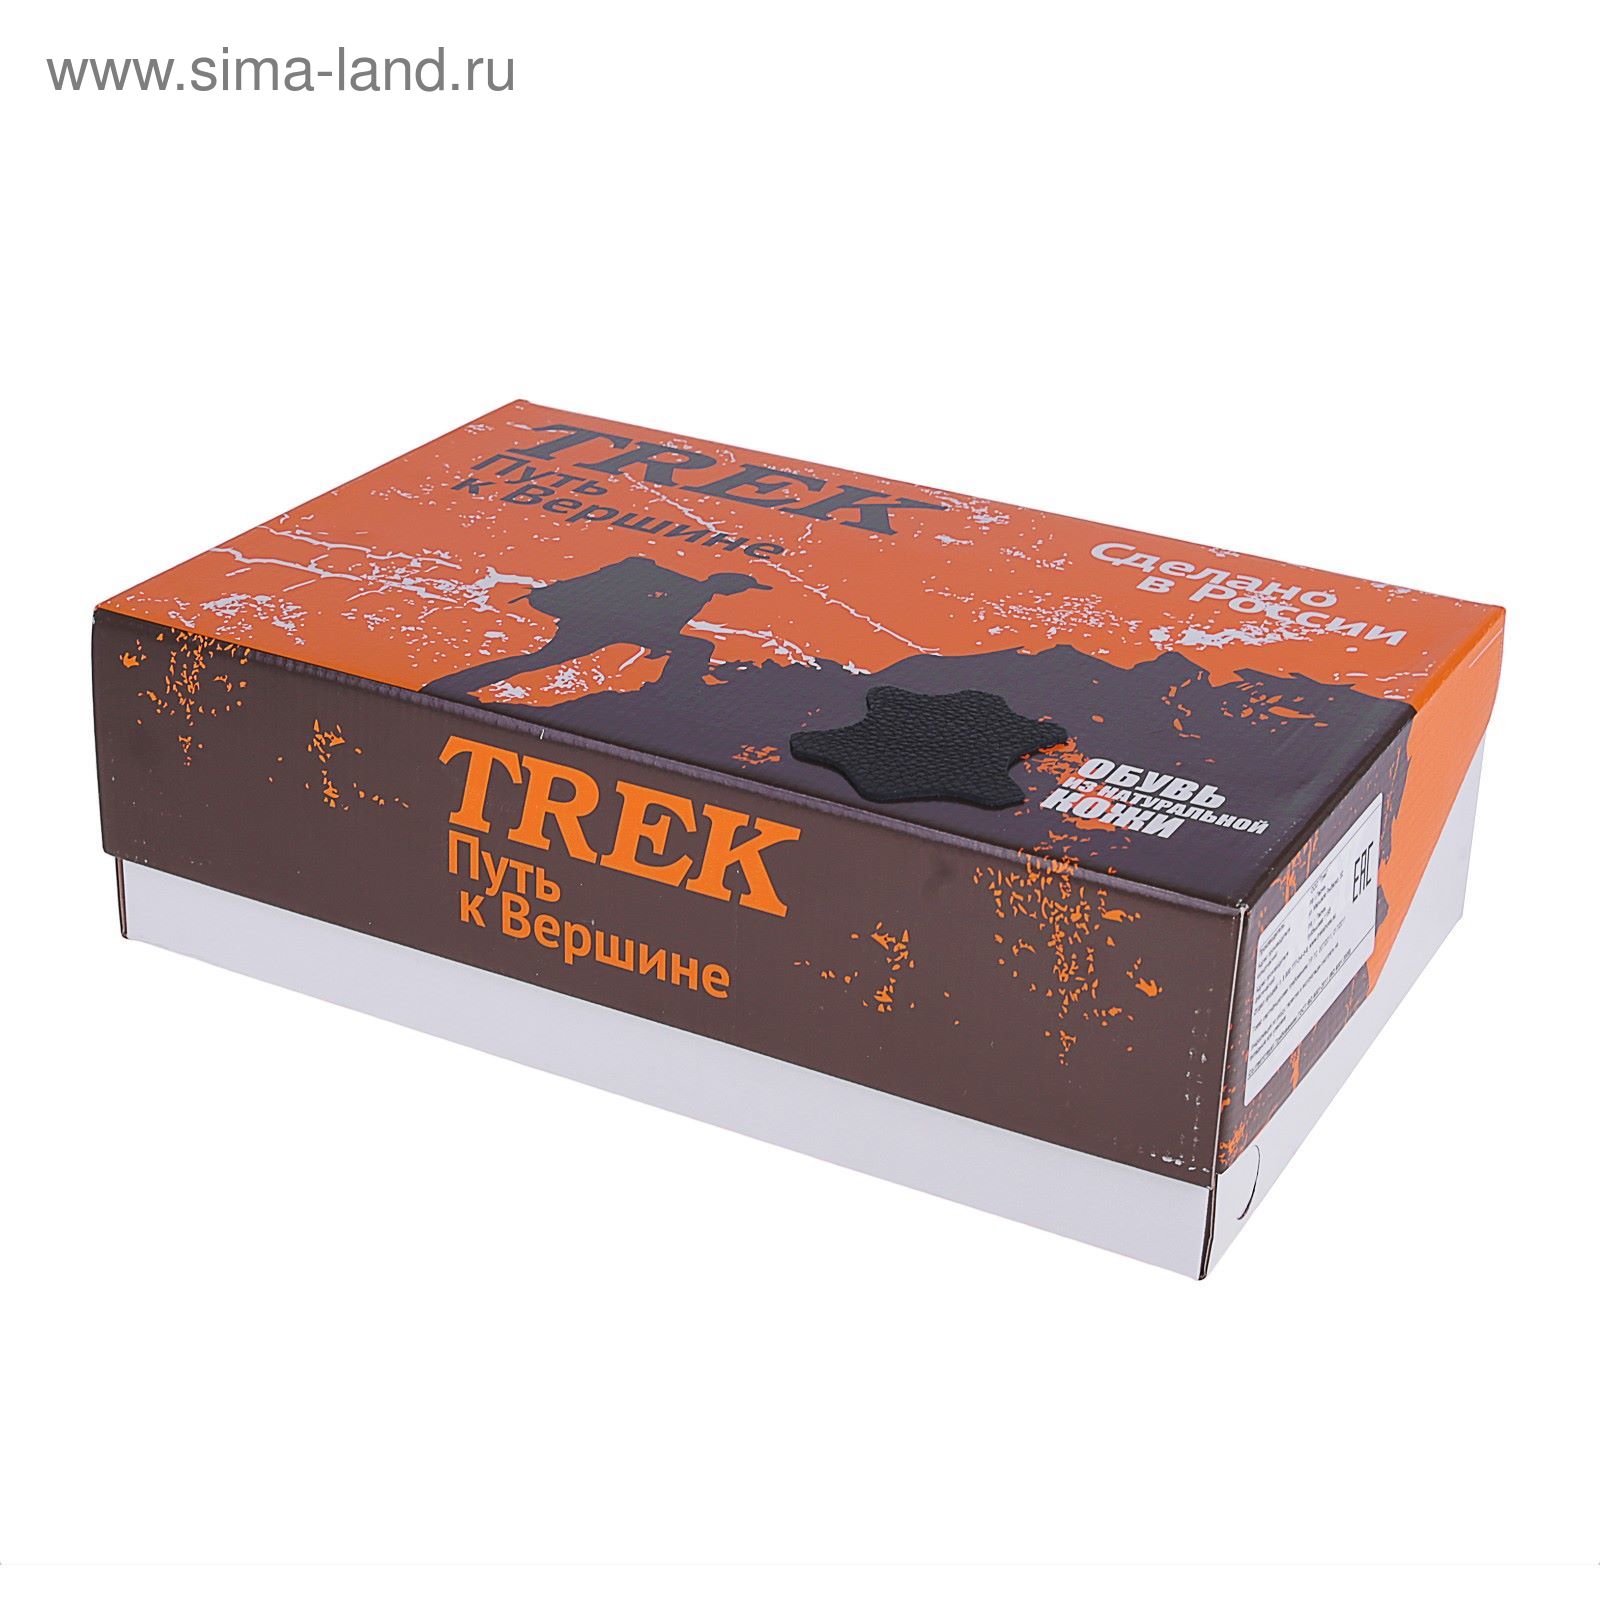 Ботинки TREK Спринт 93-01 мех (черный) (р.36)